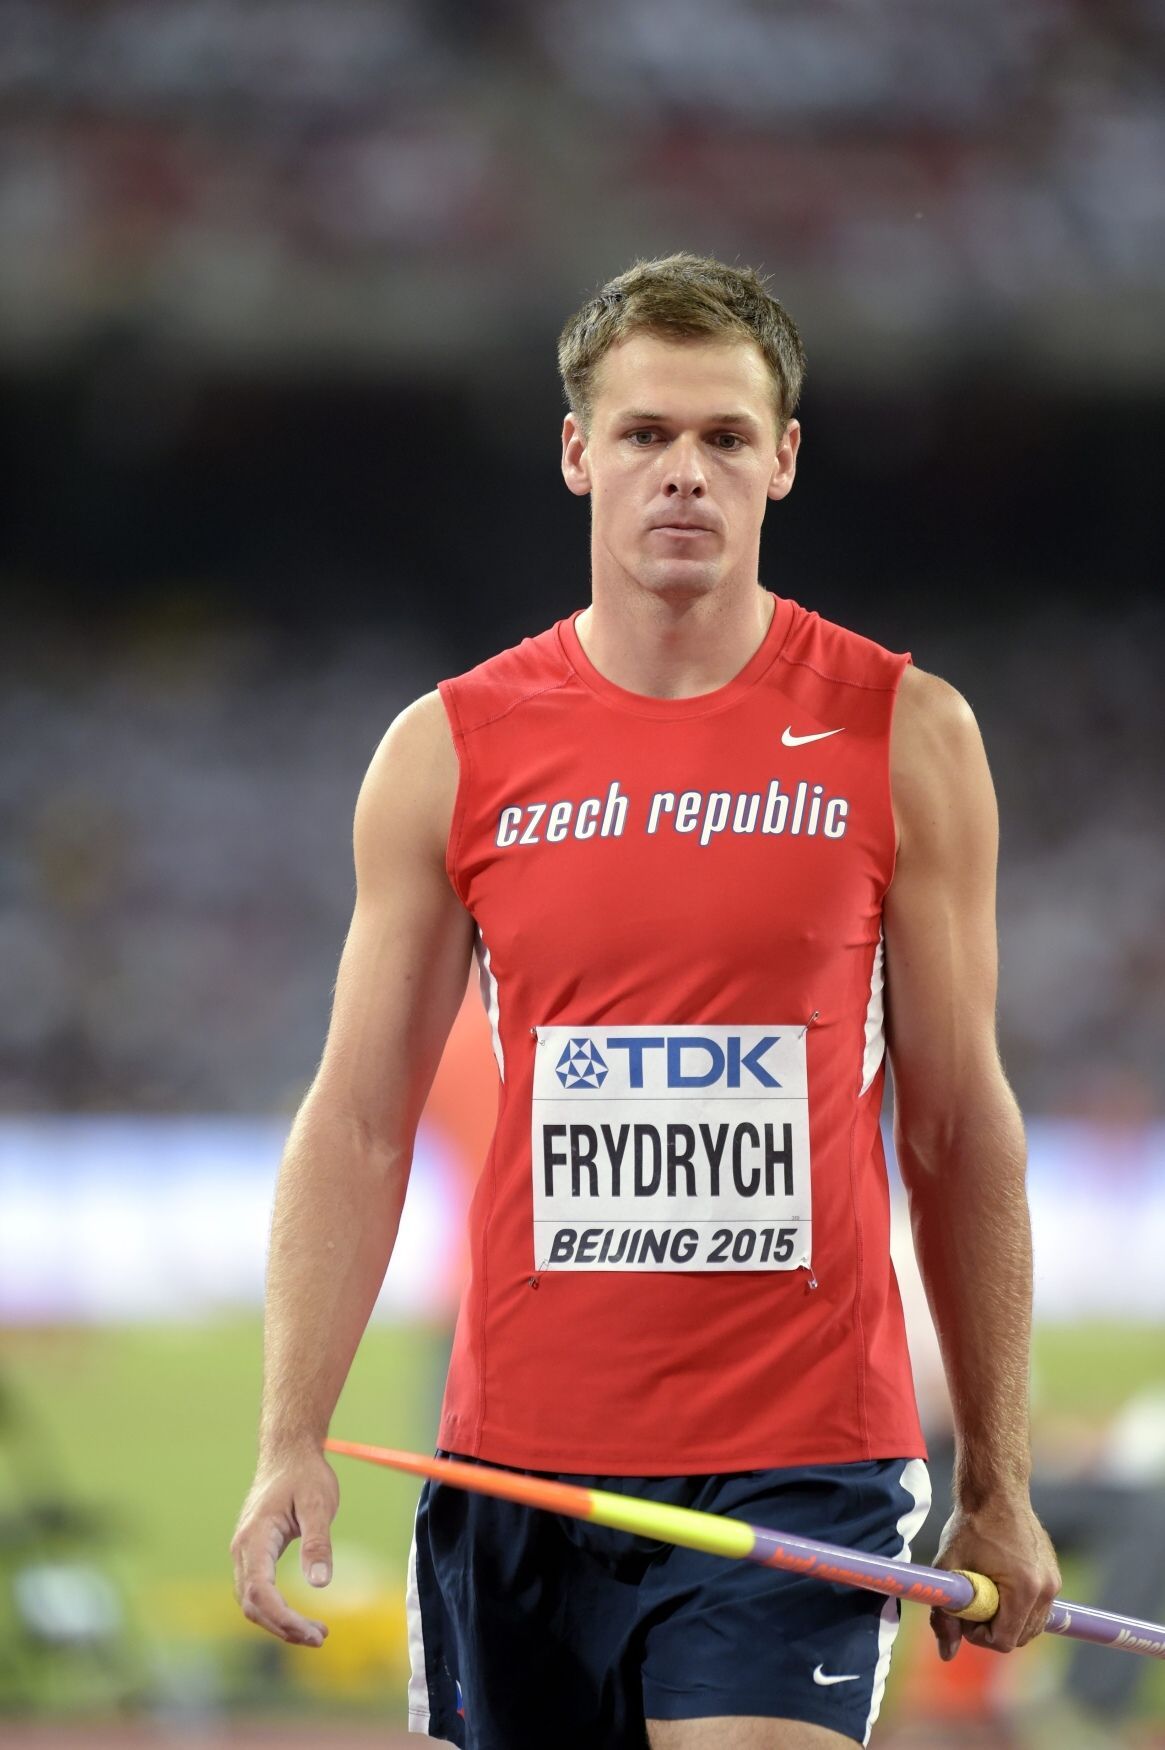 MS v atletice 2015, oštěp: Petr Frydrych